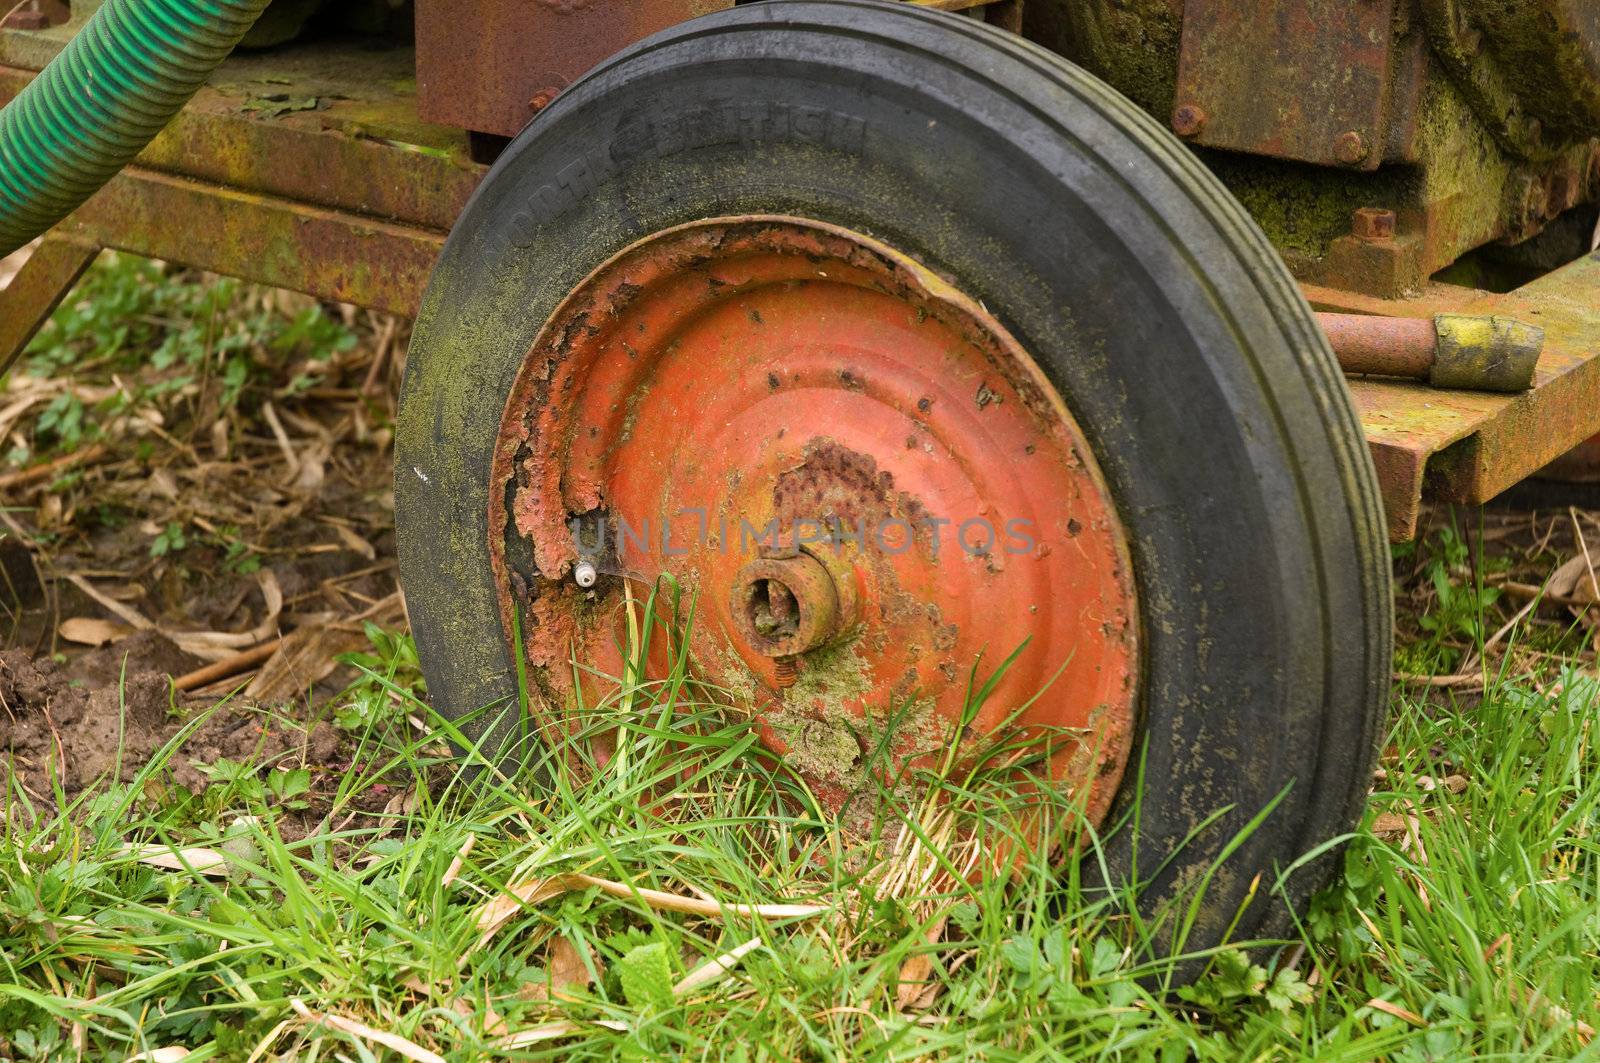 Old red wheel on mobile waterpump